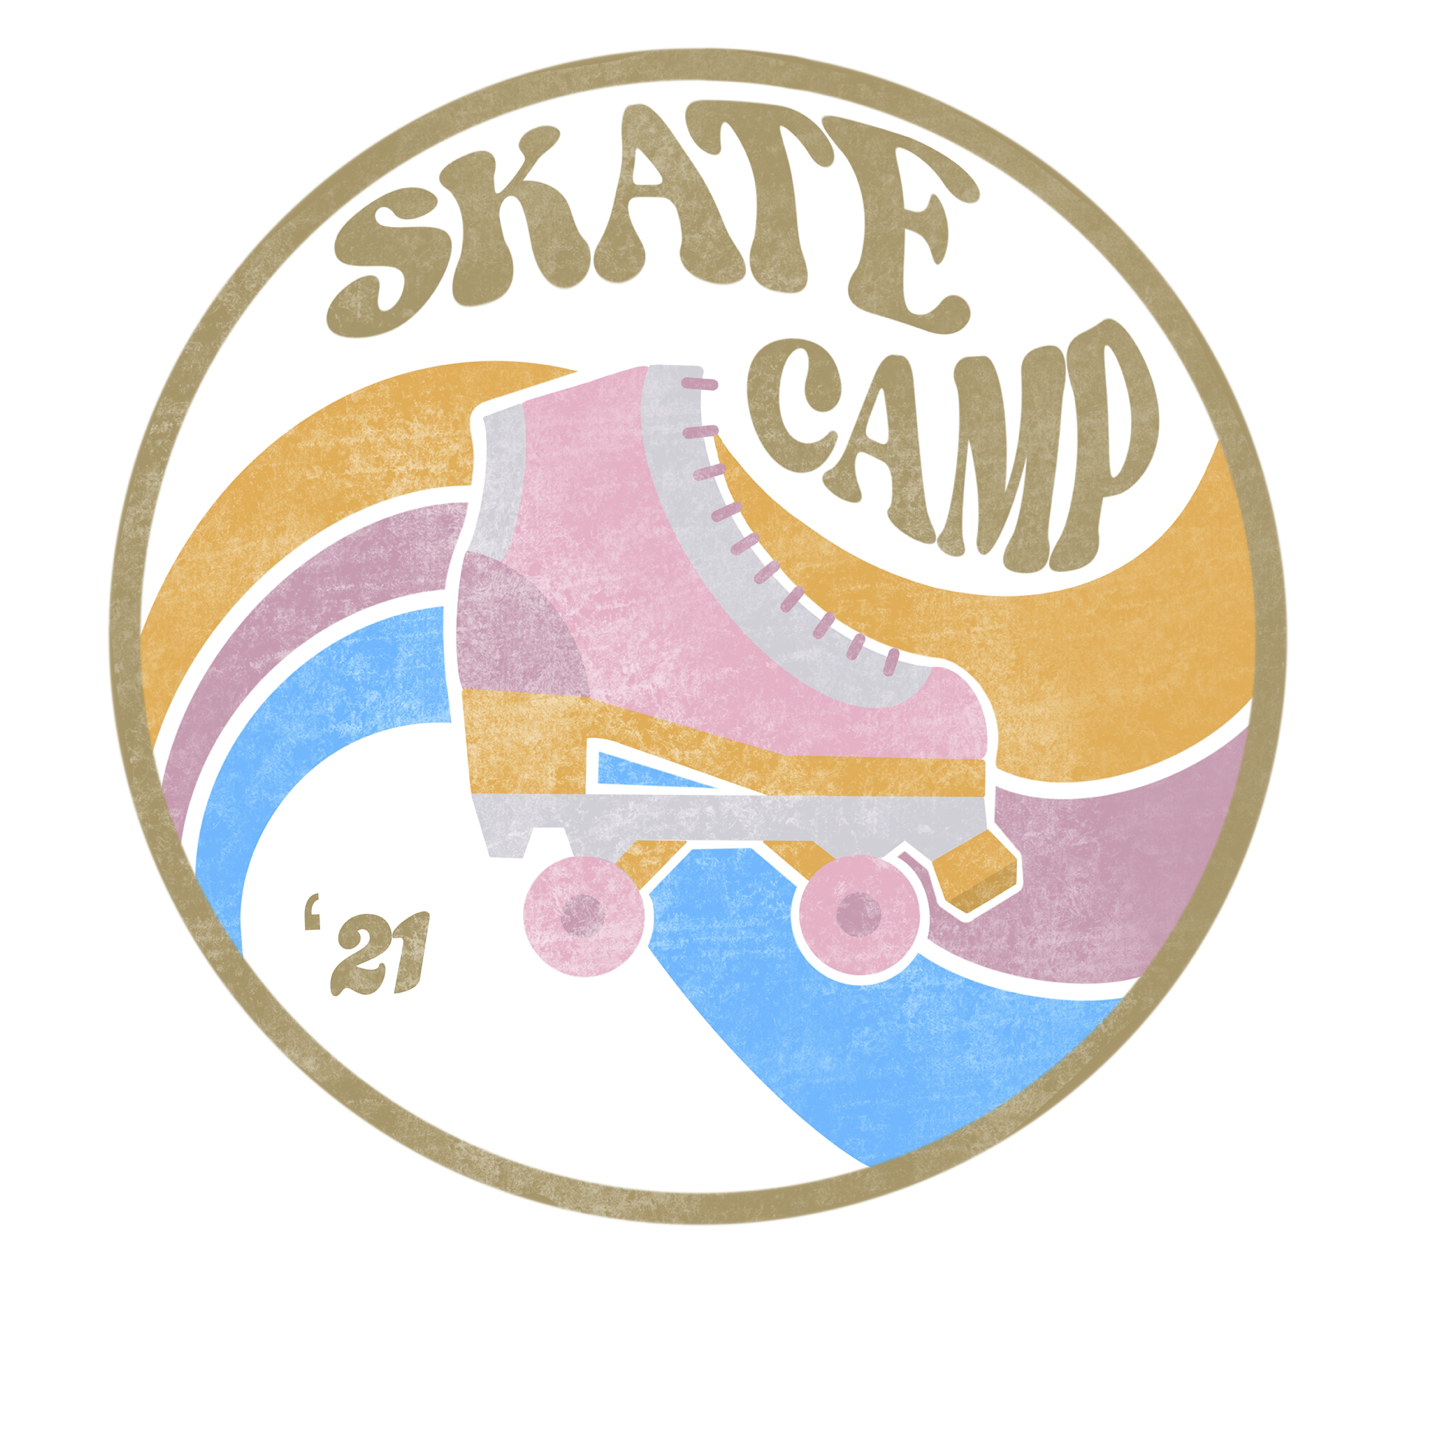 Skate Camp LA